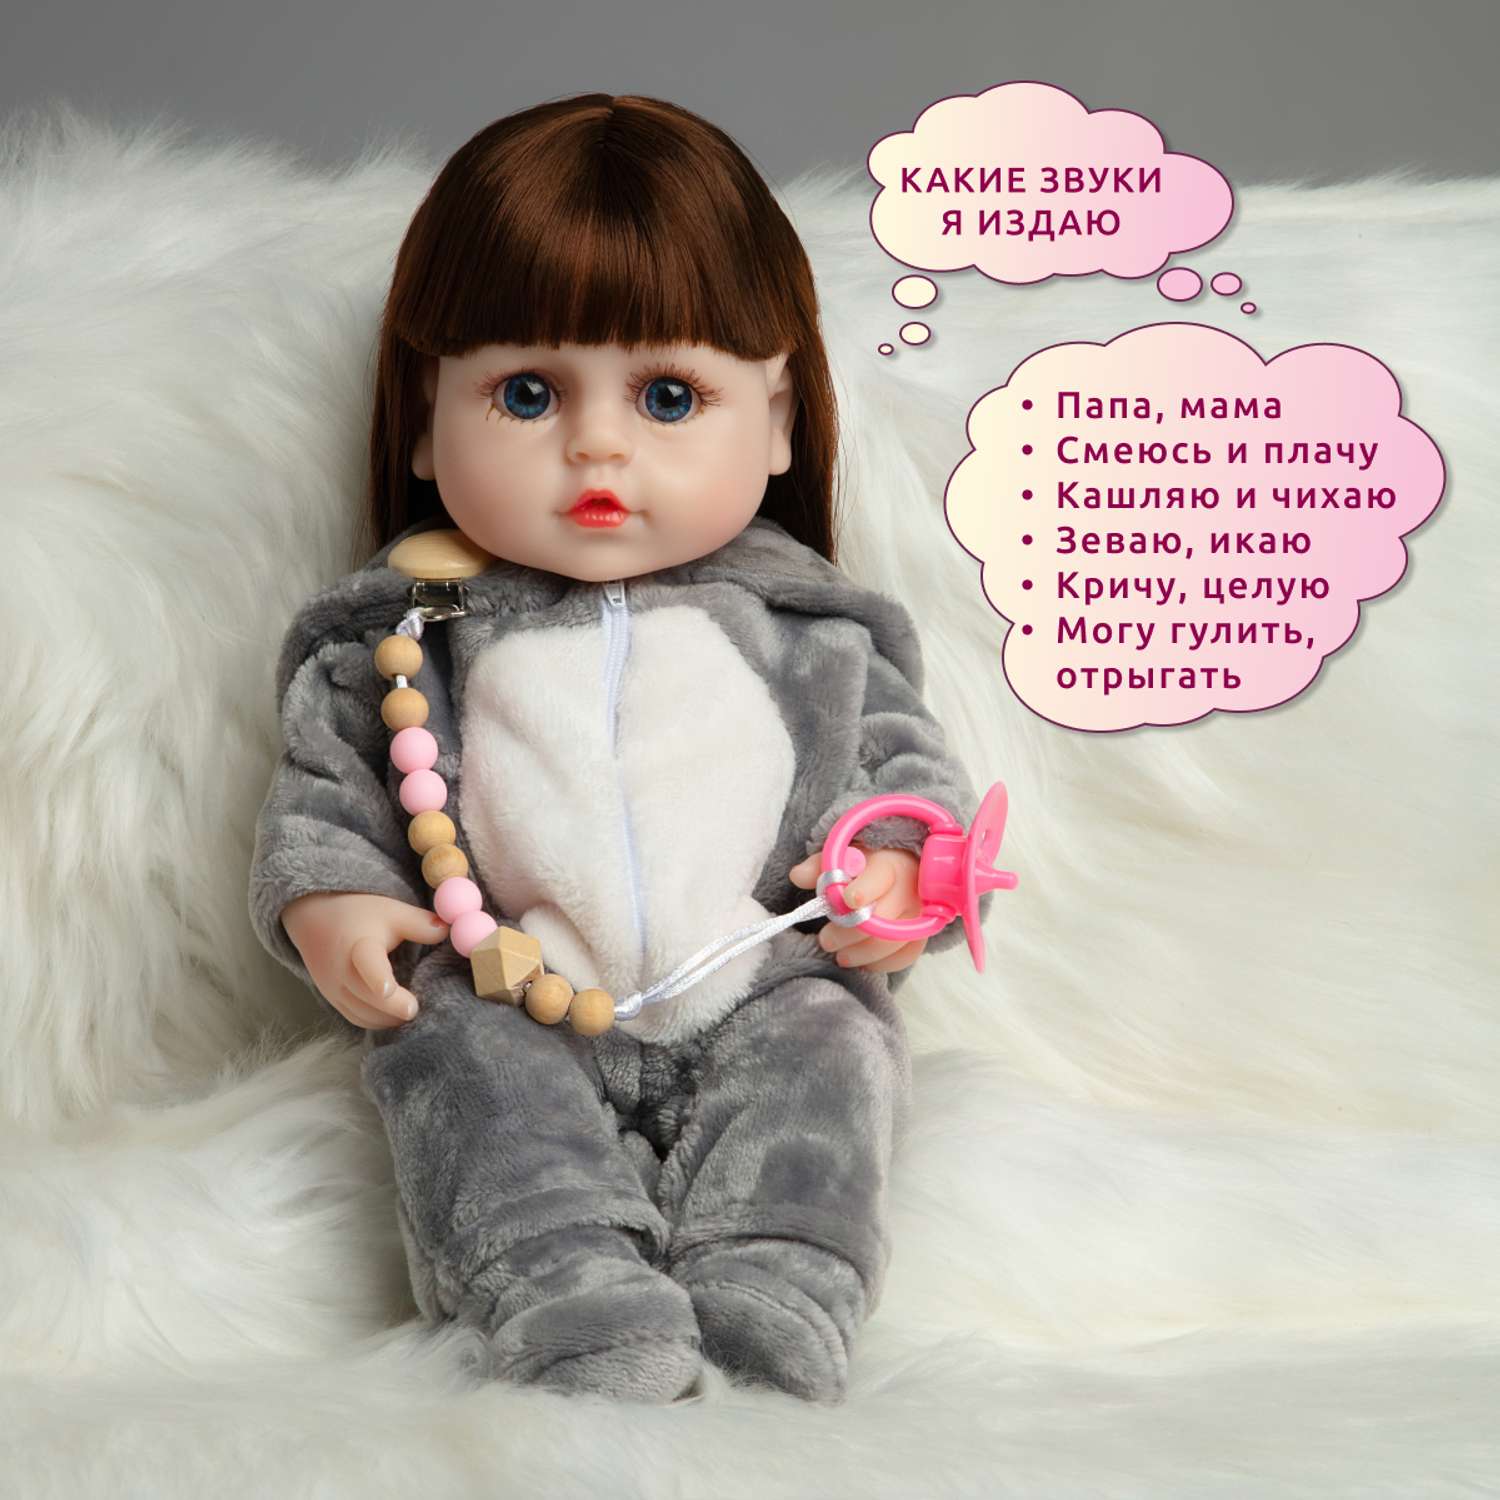 Кукла Реборн QA BABY Мисти девочка интерактивная Пупс набор игрушки для ванной для девочки 38 см 3808 - фото 3